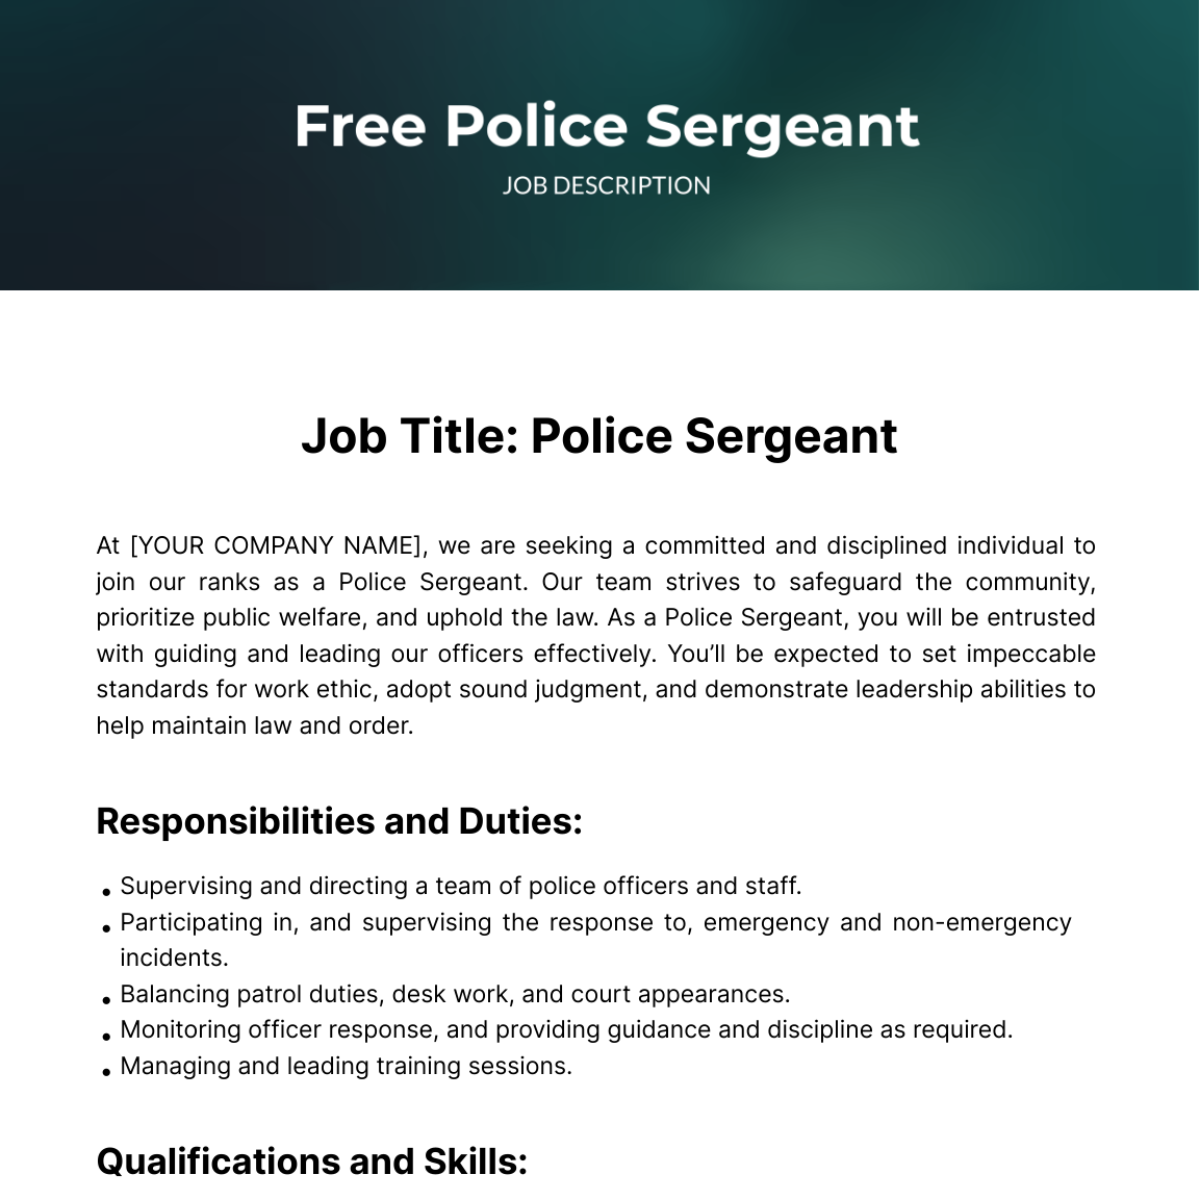 Free Police Sergeant Job Description Template